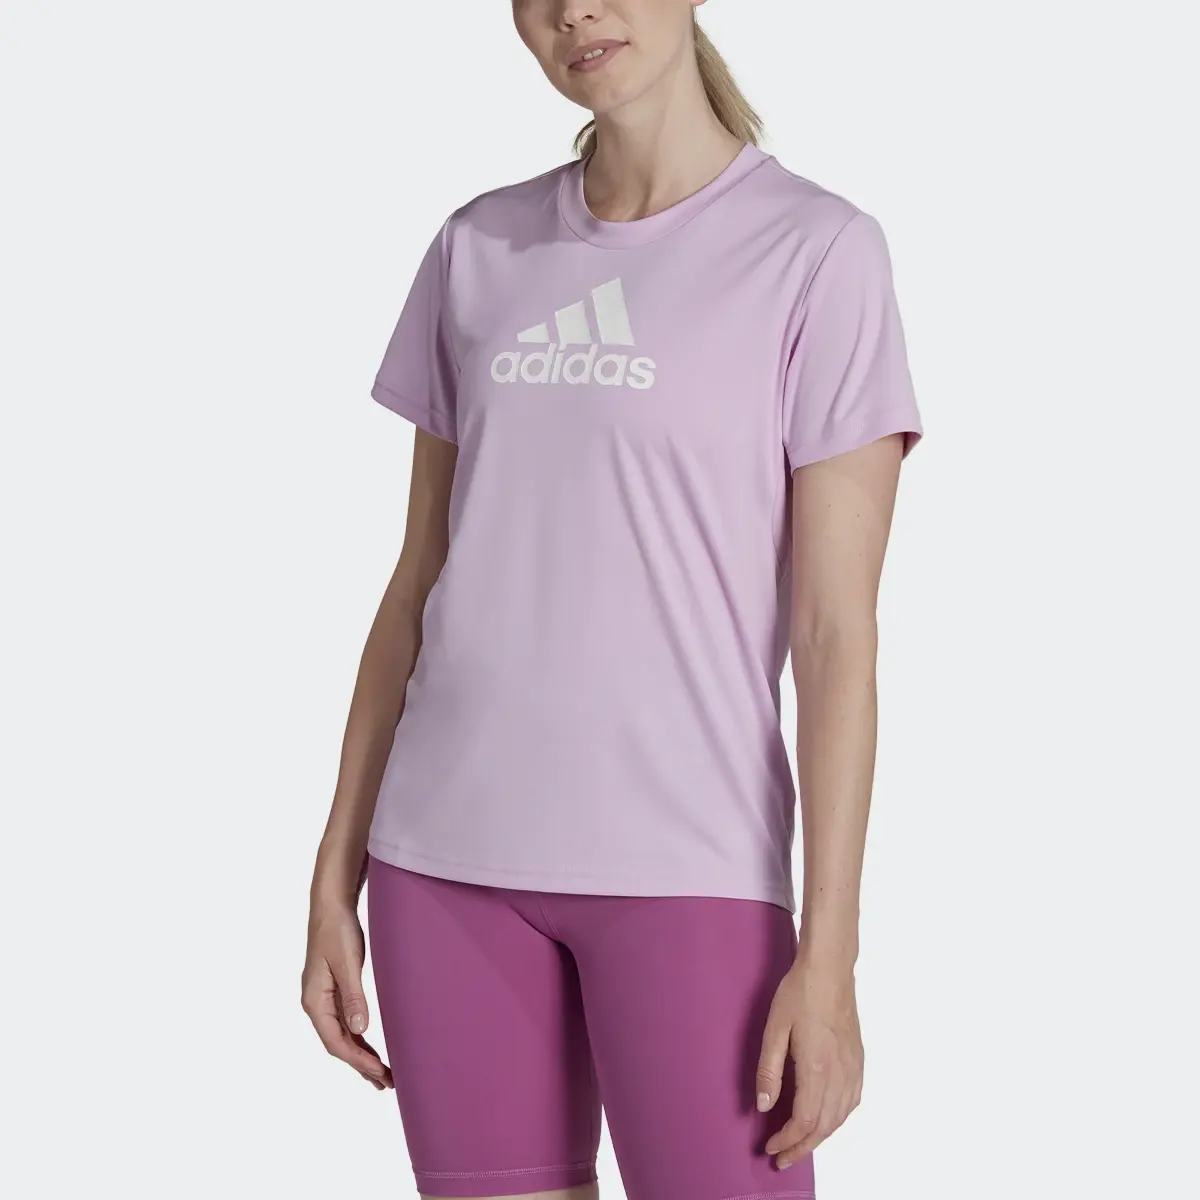 Adidas T-shirt Primeblue Designed 2 Move Logo Sport. 1